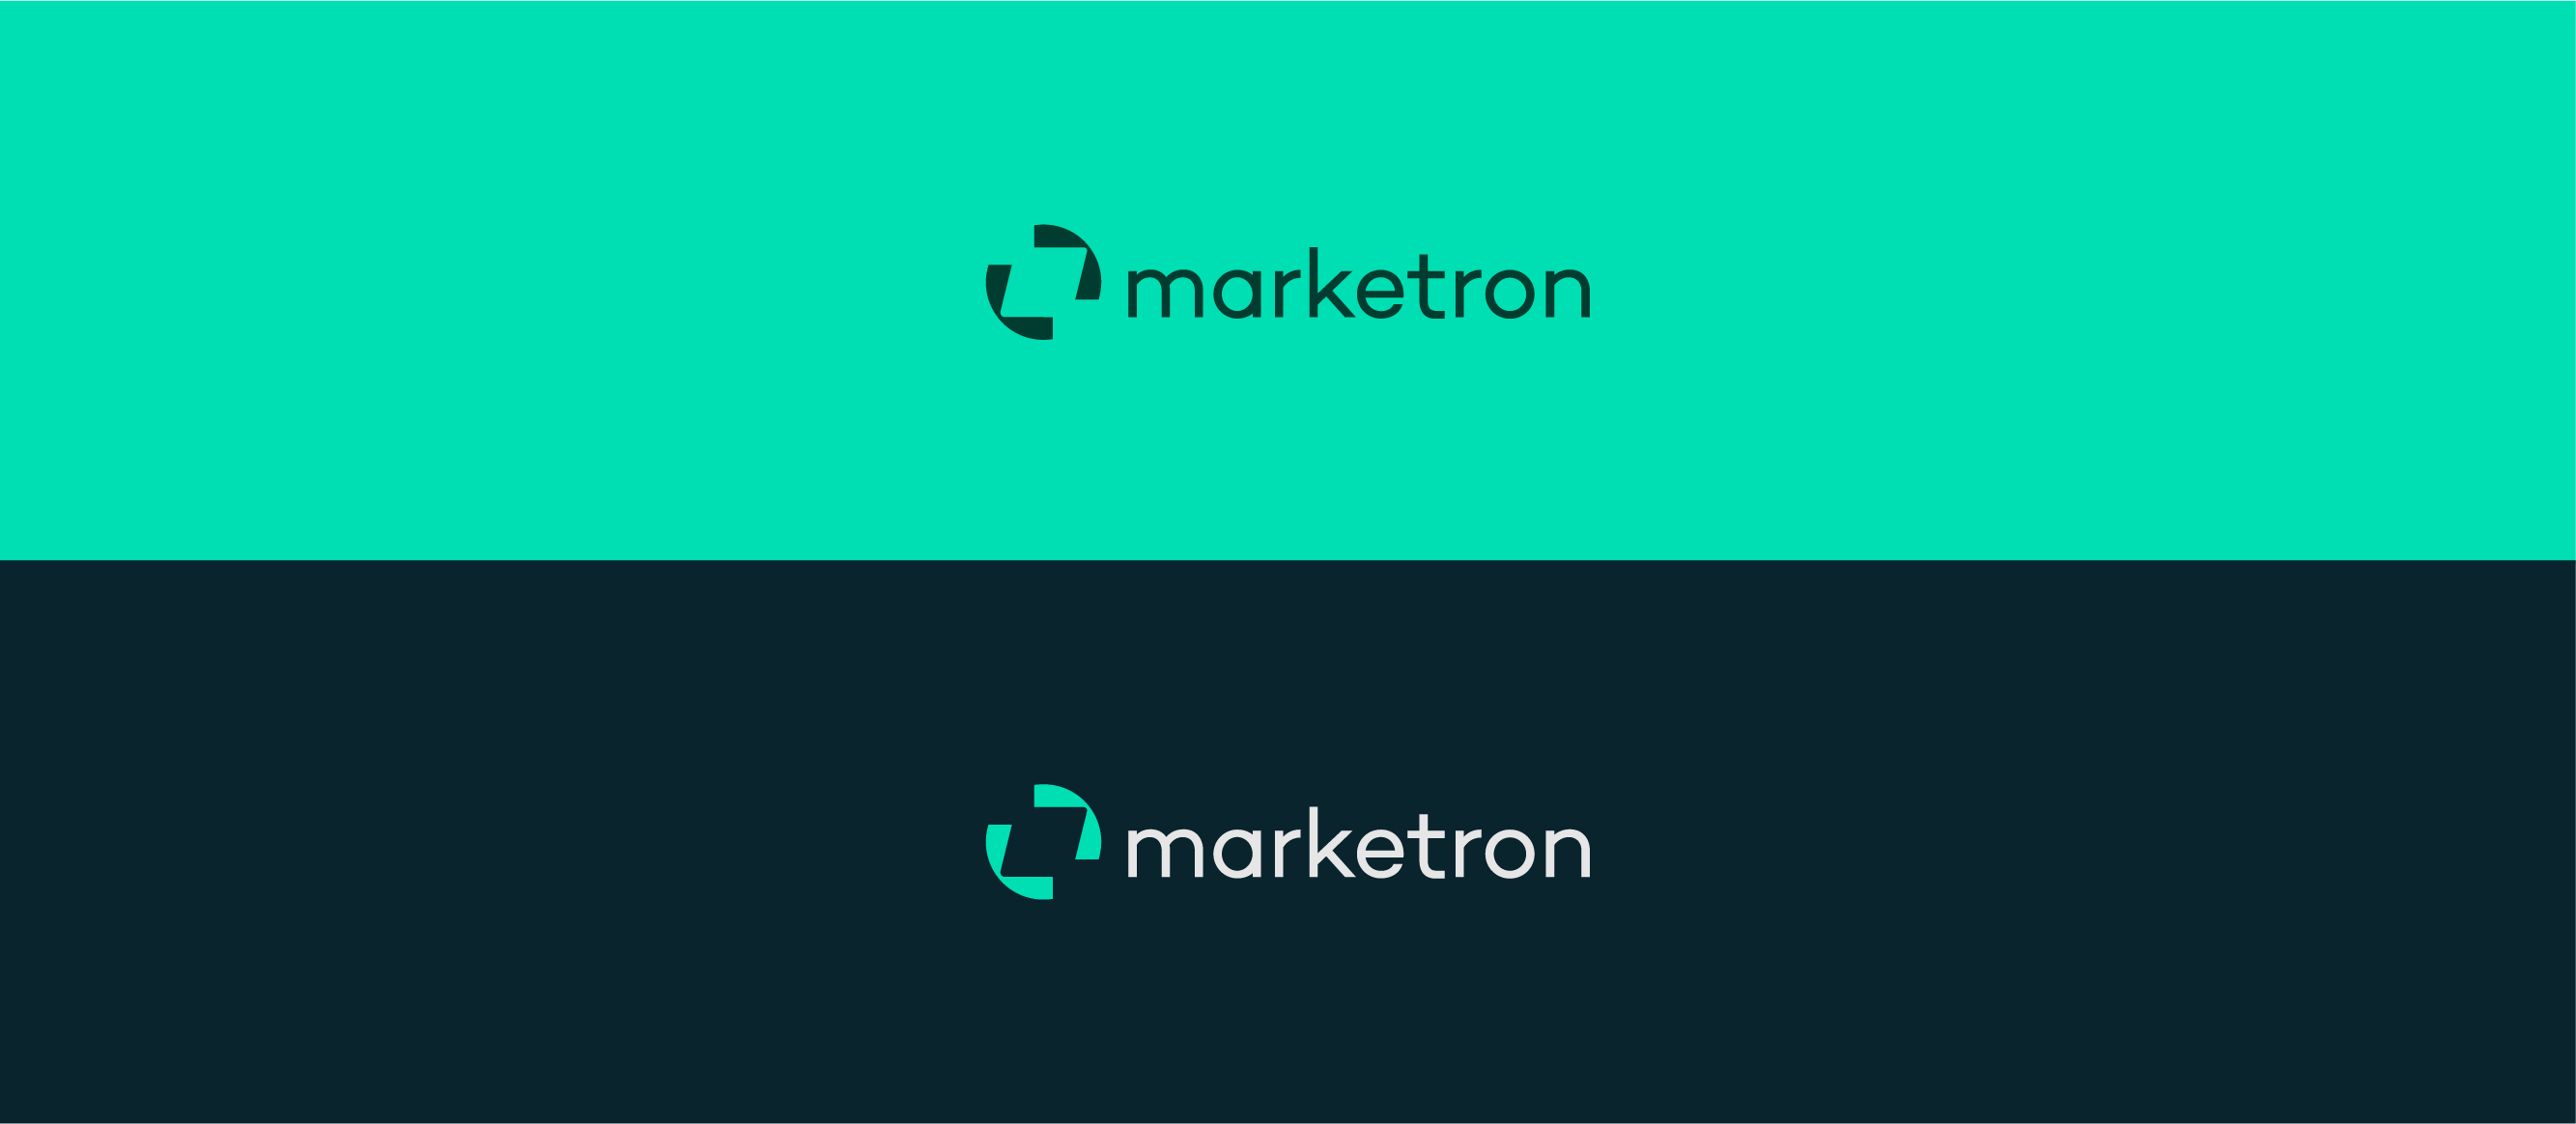 marketron-logo-colors-07